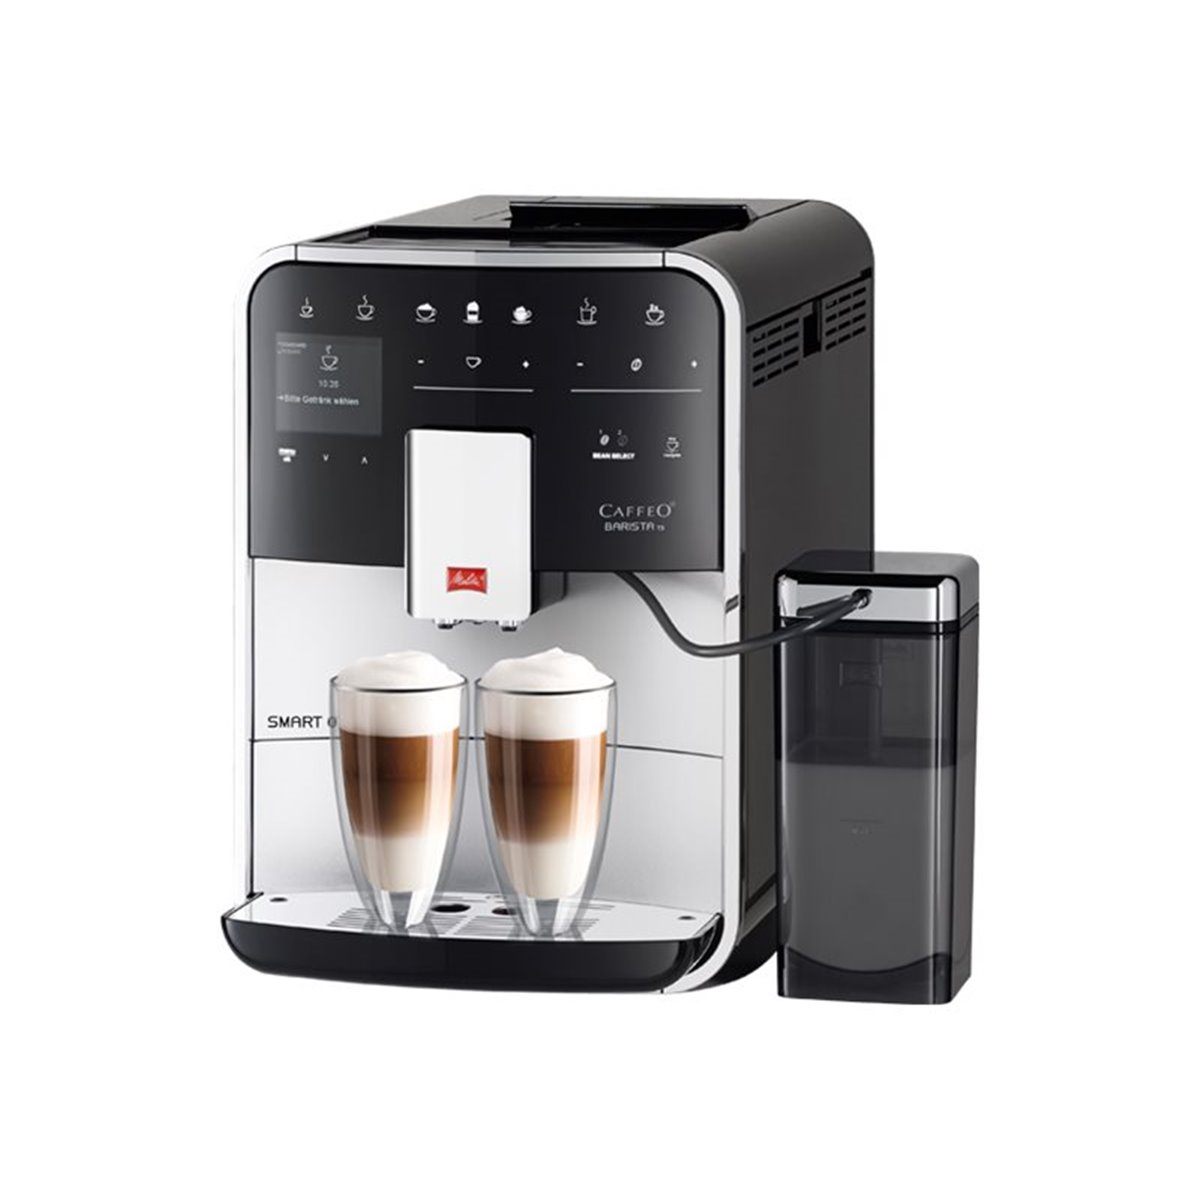 MELITTA F 85-0-101 si Kaffee-Espressoautomat CaffeoBaristaTSSmart